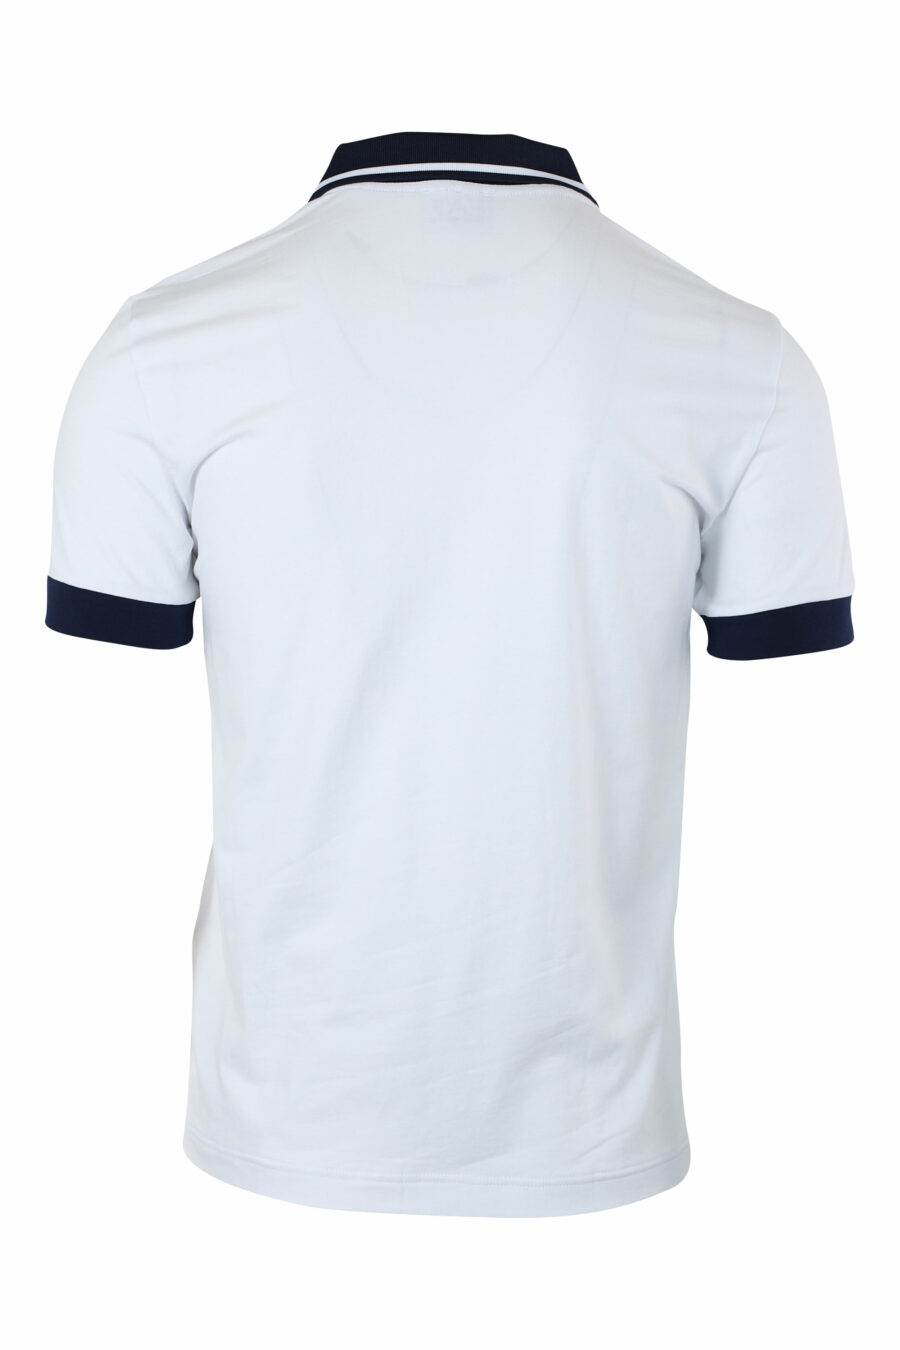 Weißes Poloshirt mit Mini-Logo und Schulterband - IMG 9639